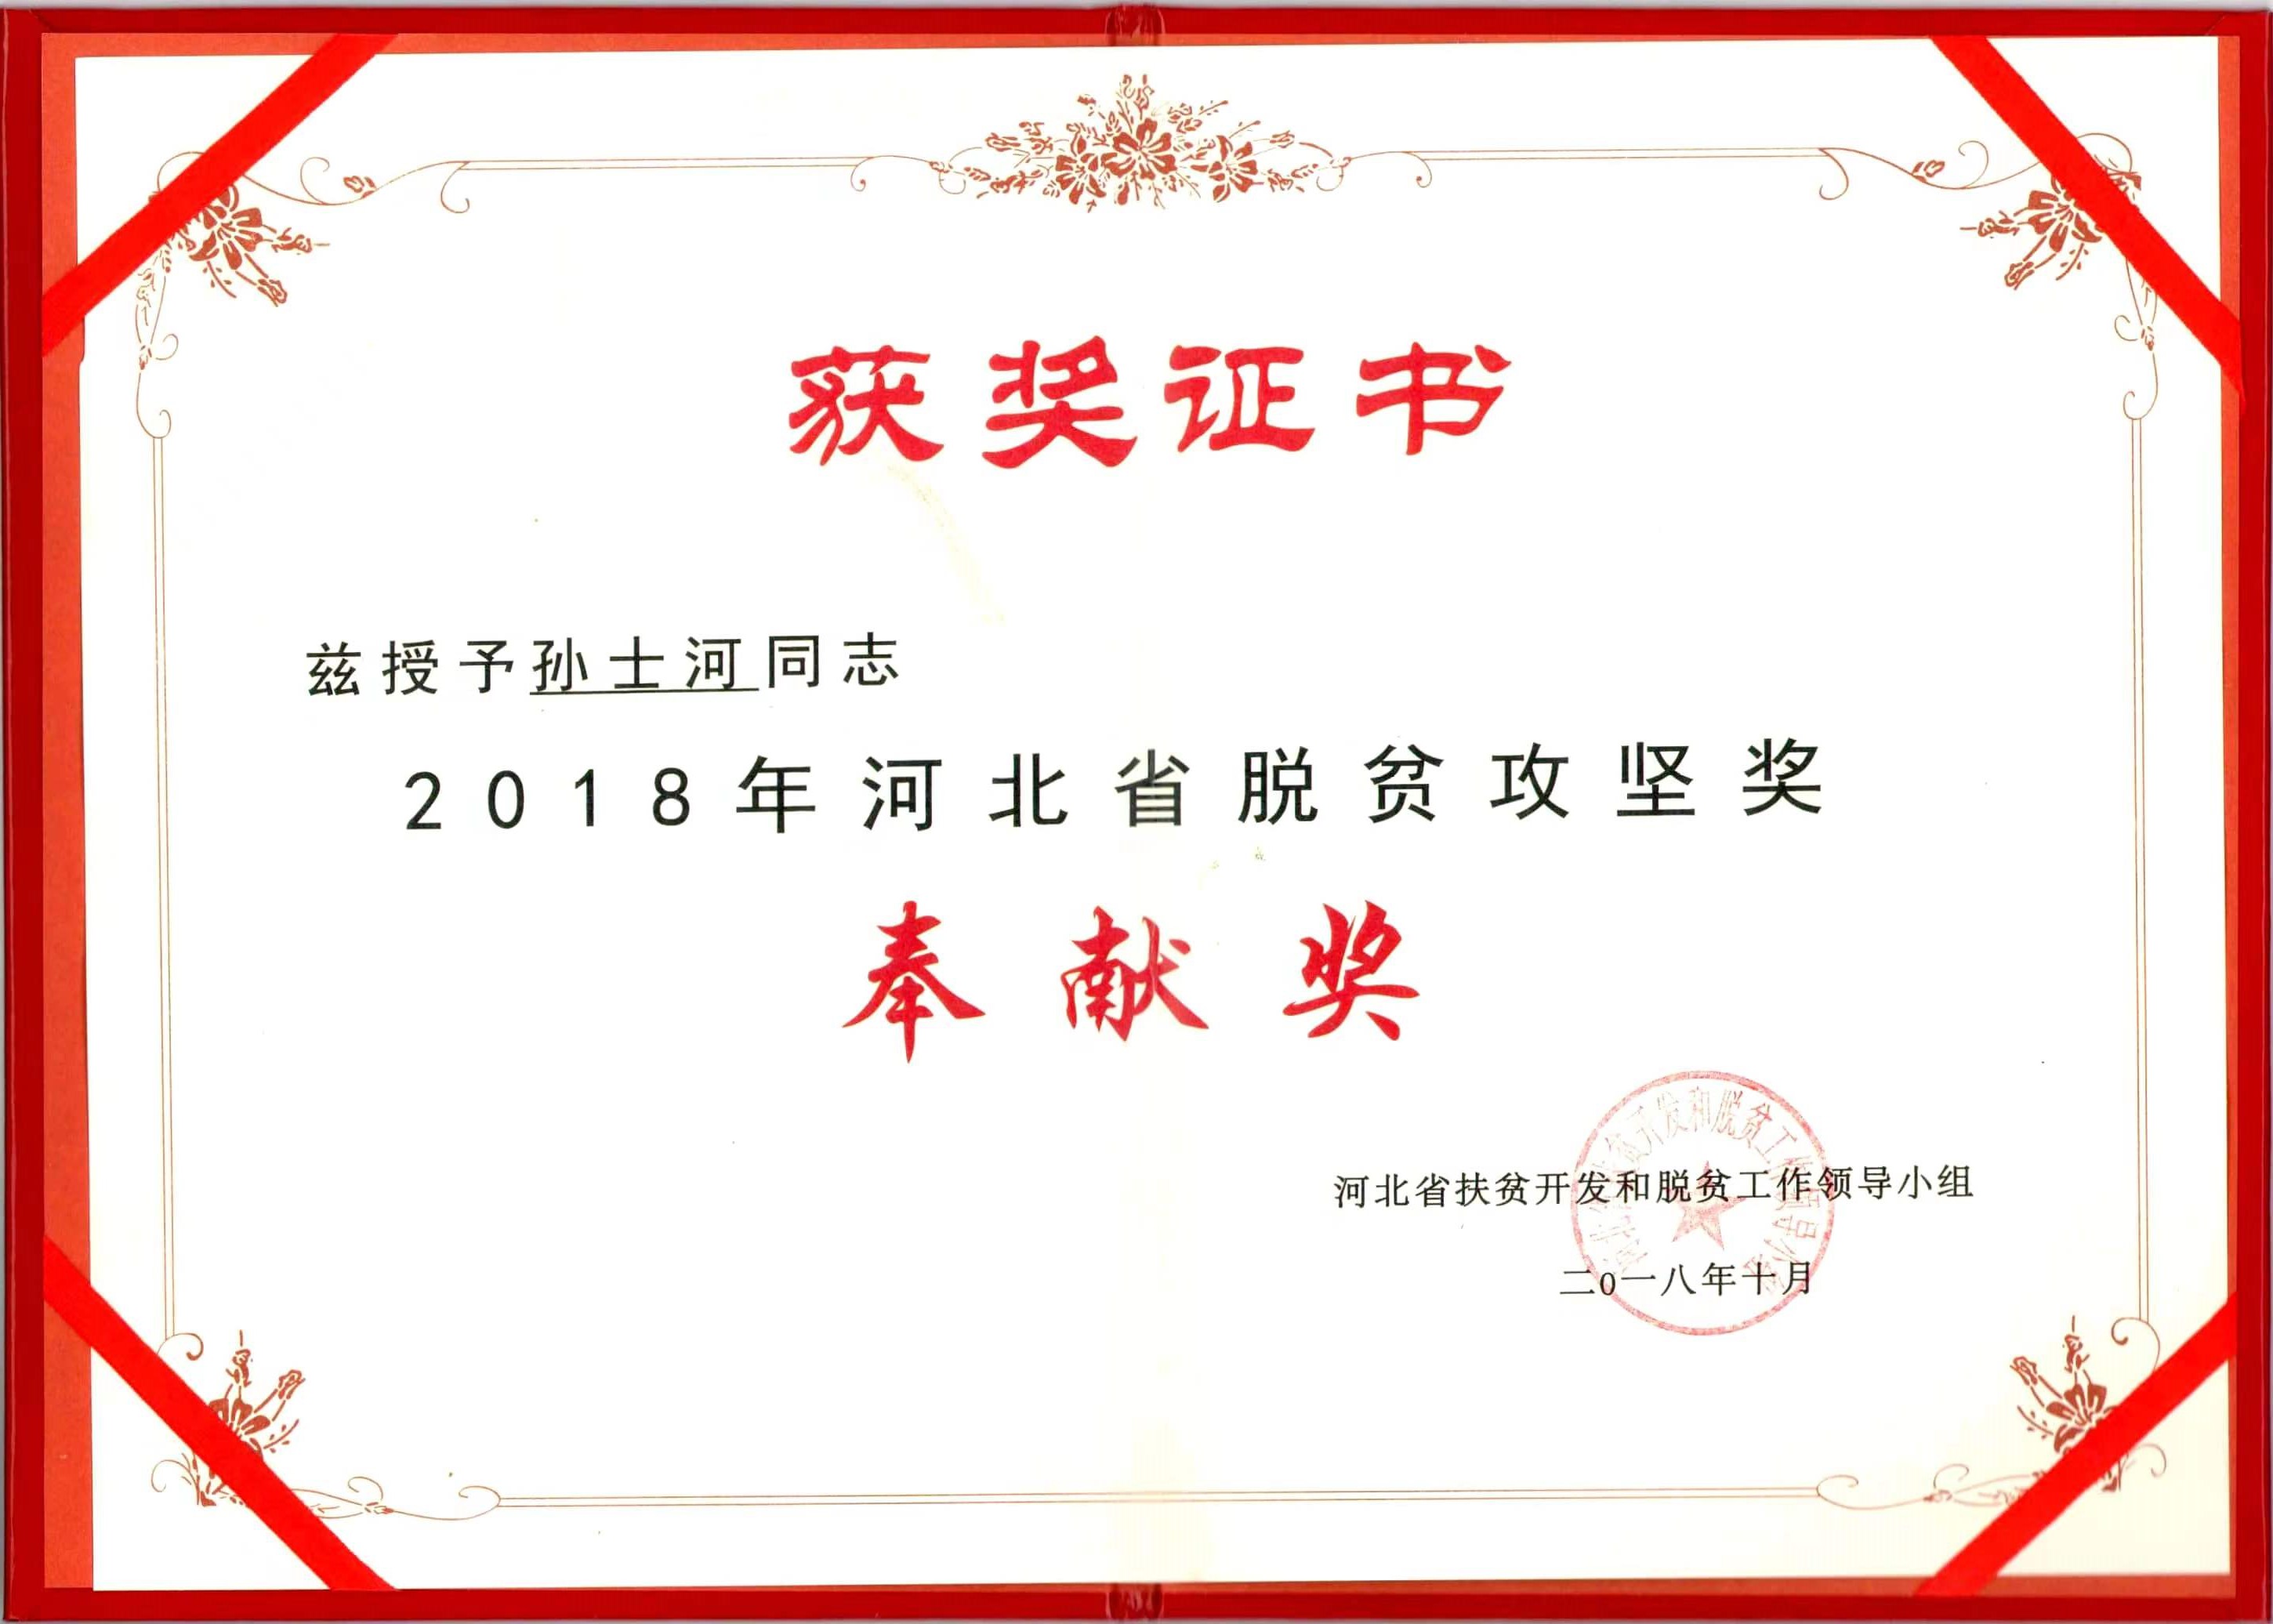 2018年河北省貧困緩和貢献賞を受賞